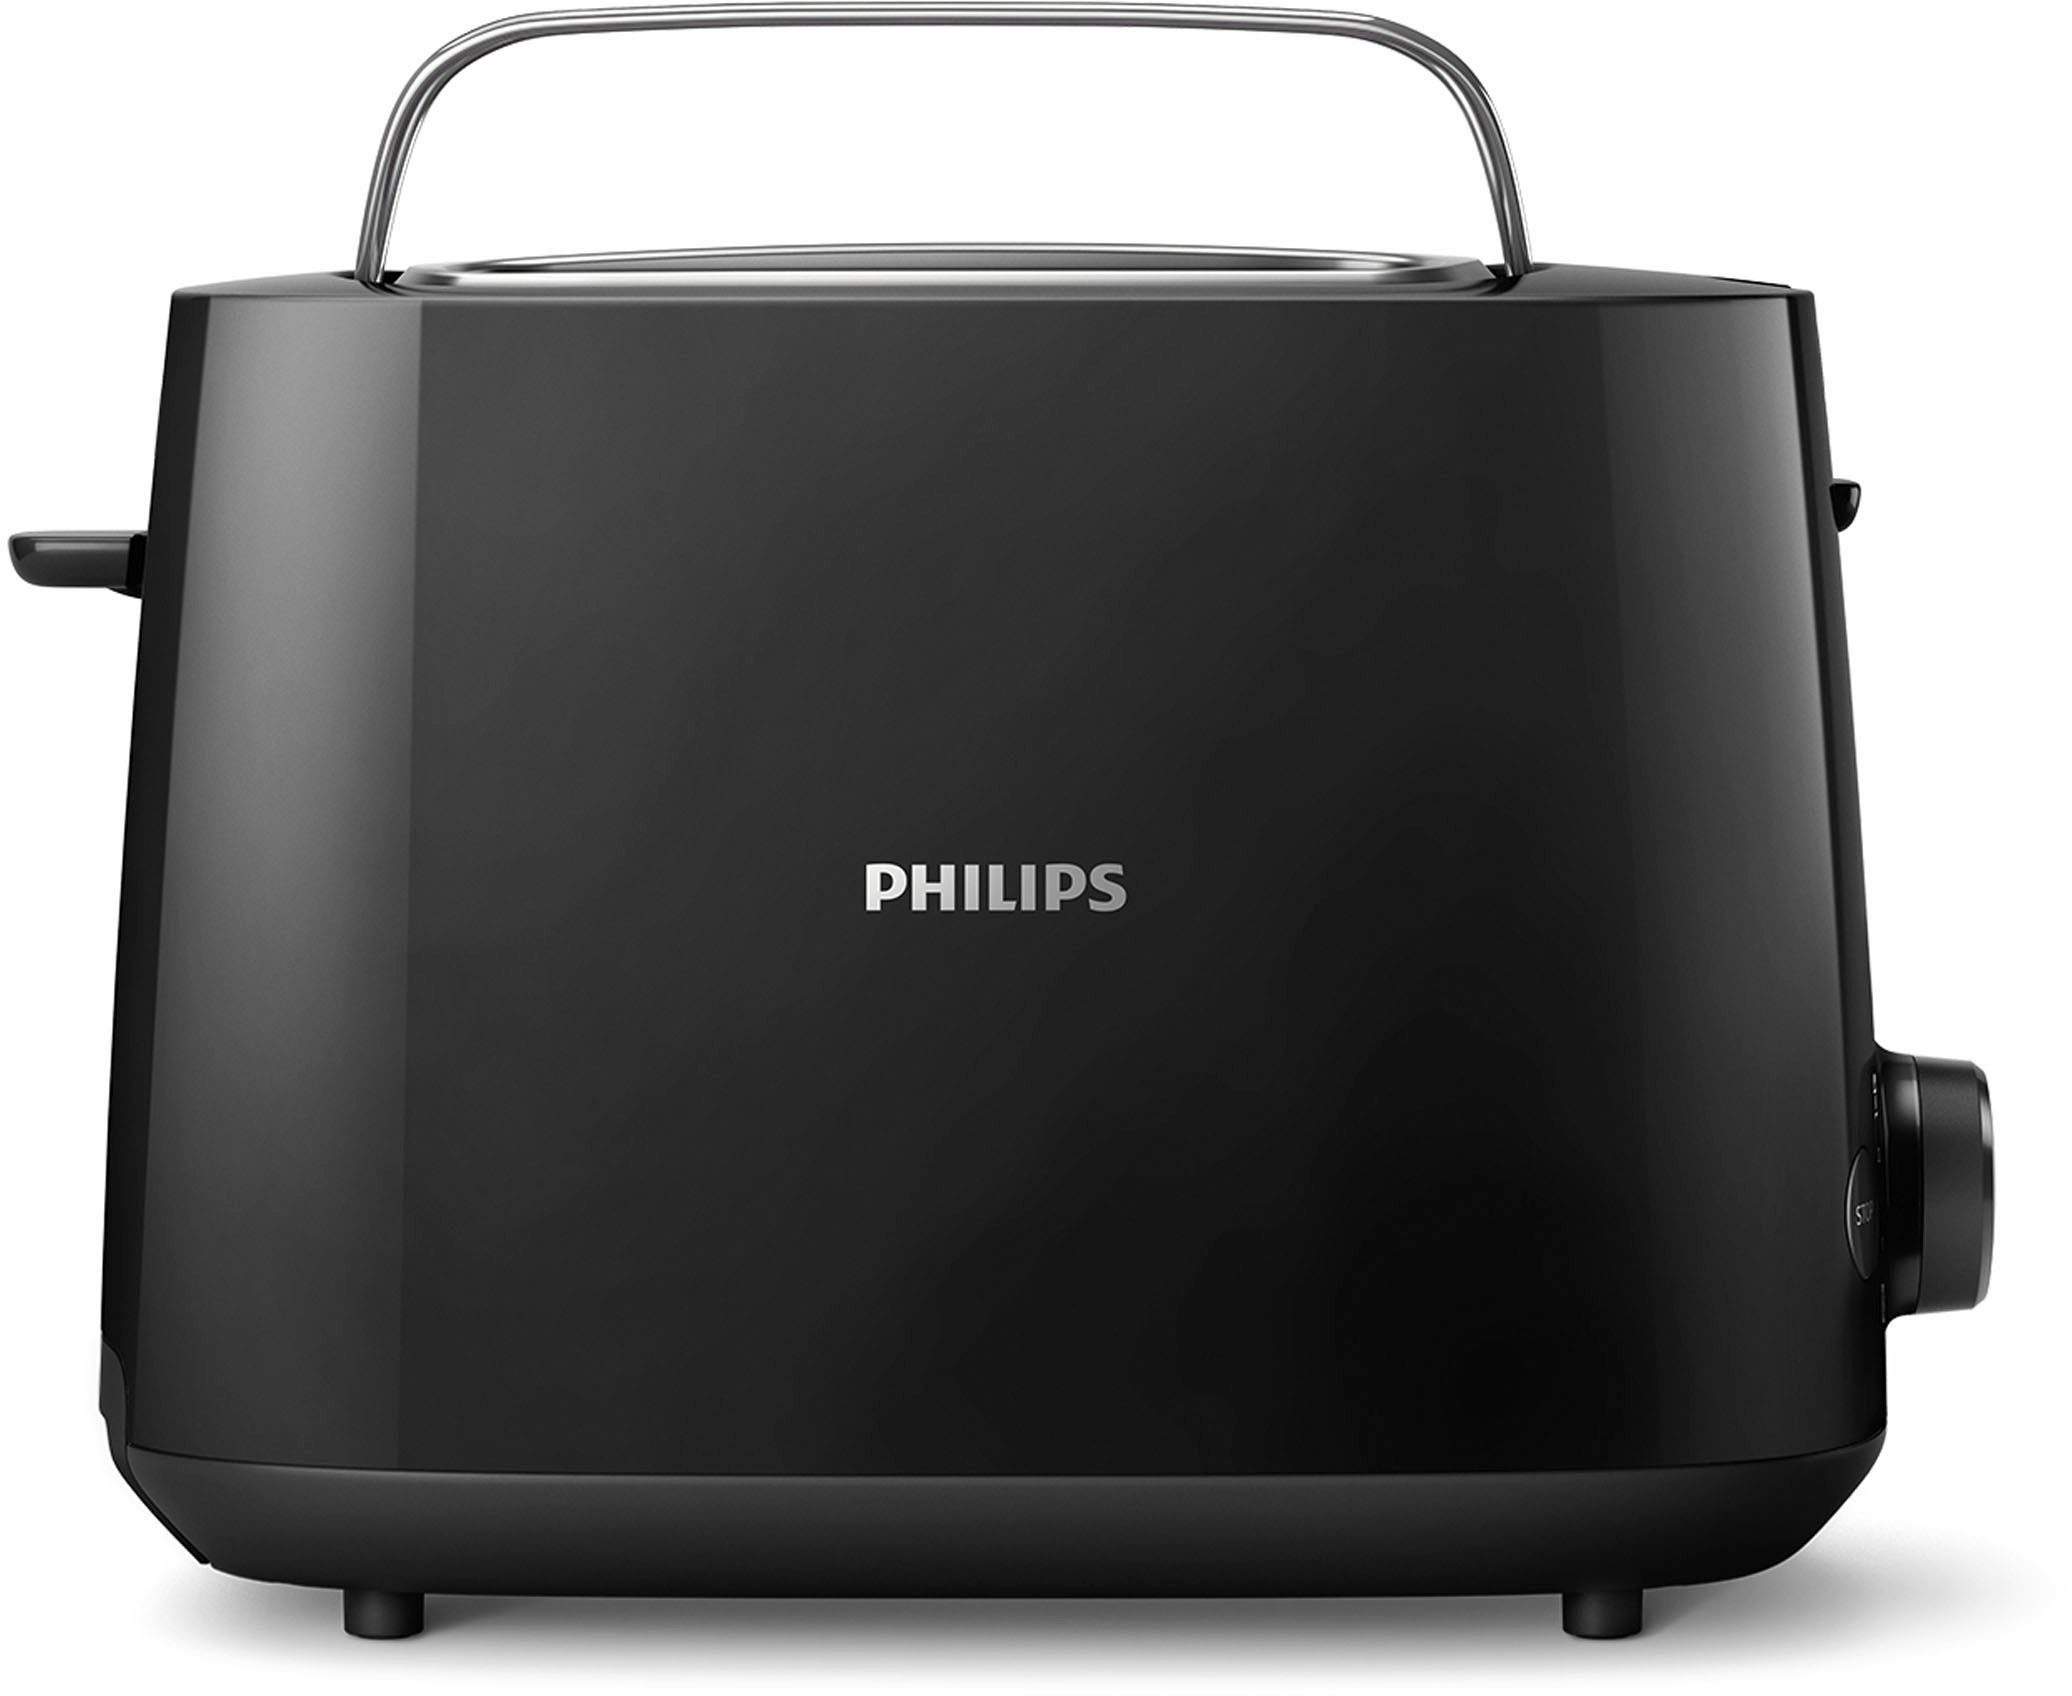 Philips Toaster HD2581/90 Daily Collection, 2 kurze Schlitze, 830 W,  integrierter Brötchenaufsatz, 8 Bräunungsstufen, schwarz